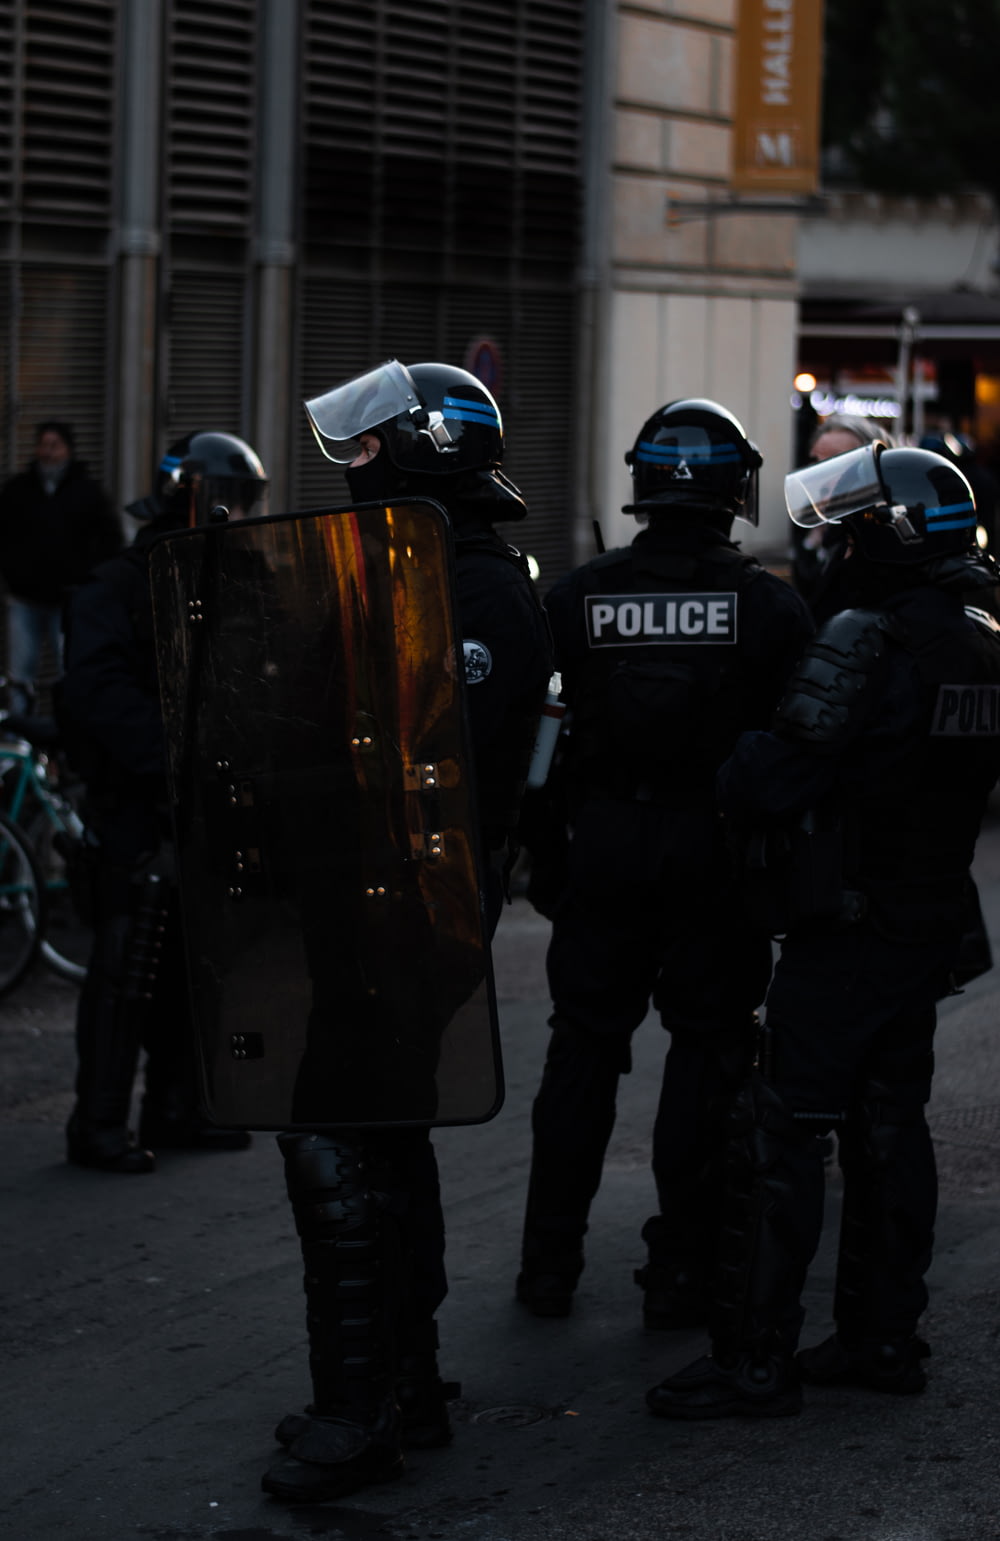 Männer in Polizeiuniformen, die tagsüber vor Gebäuden stehen